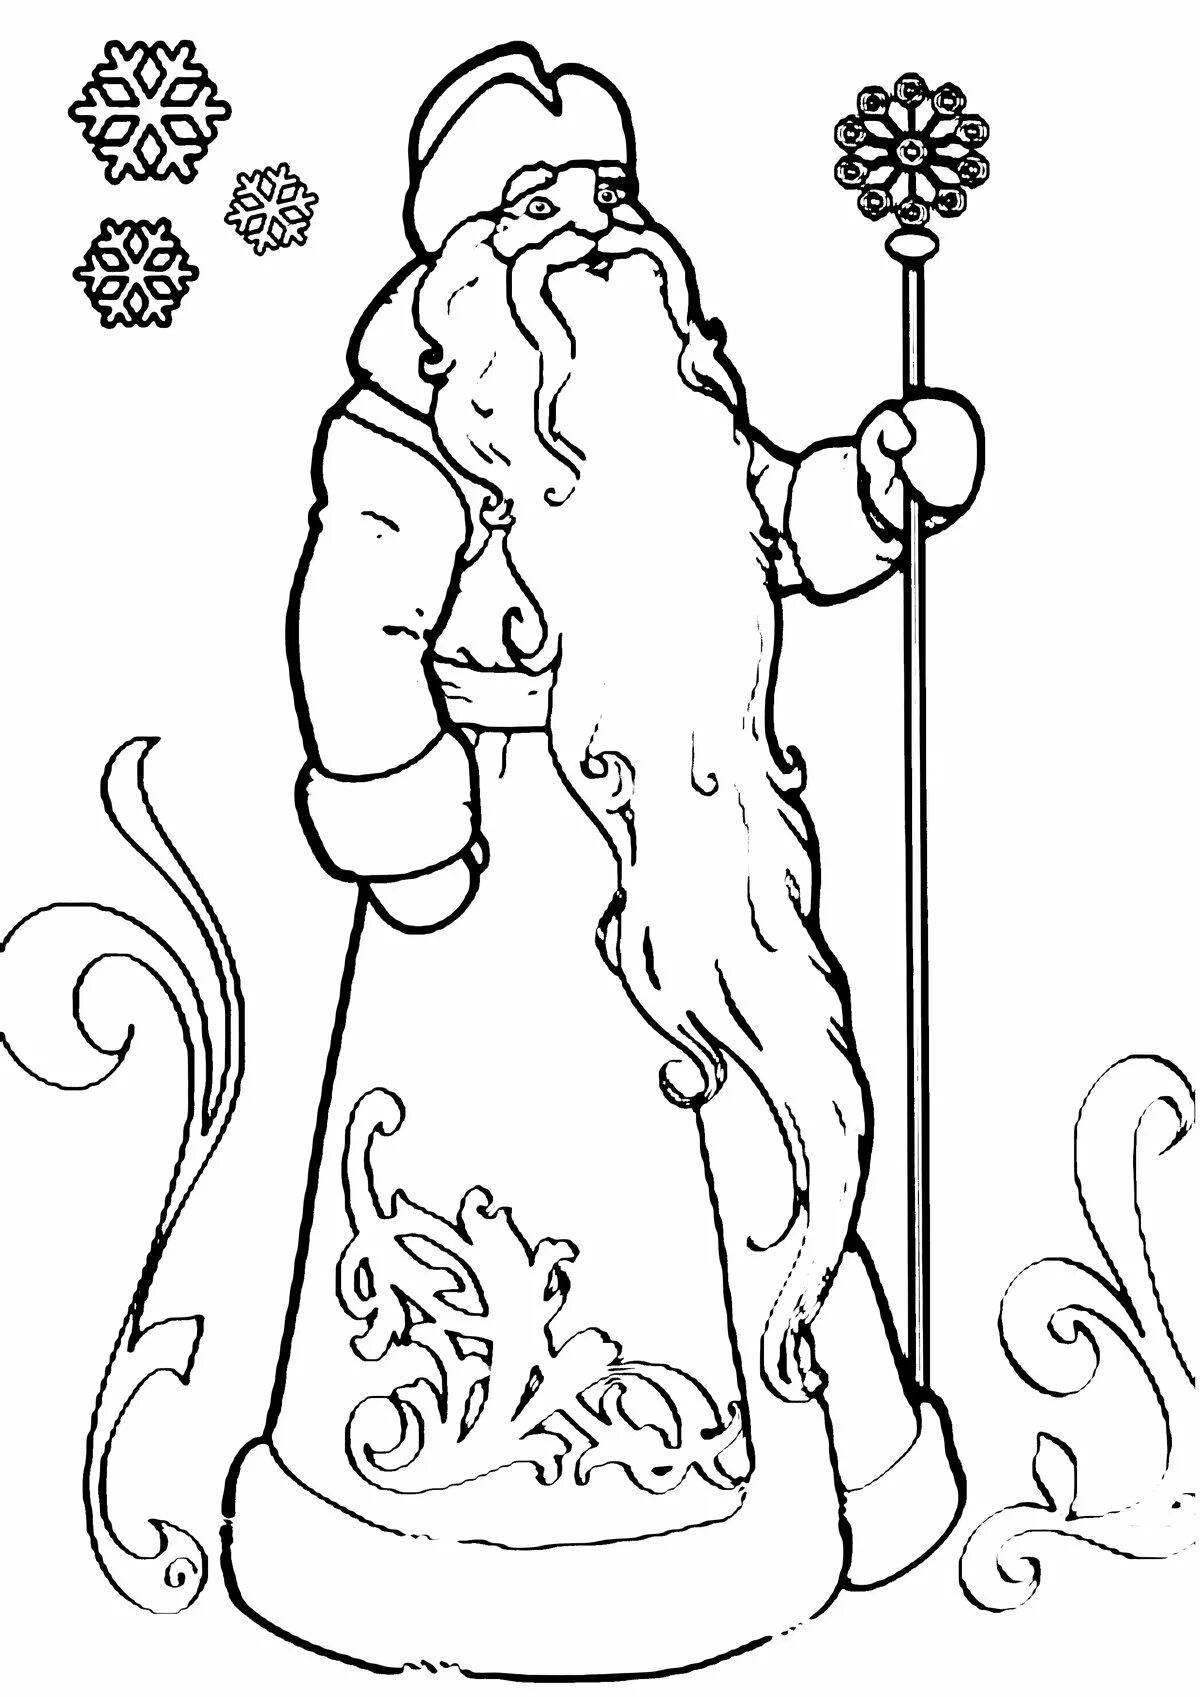 Royal santa claus coloring page